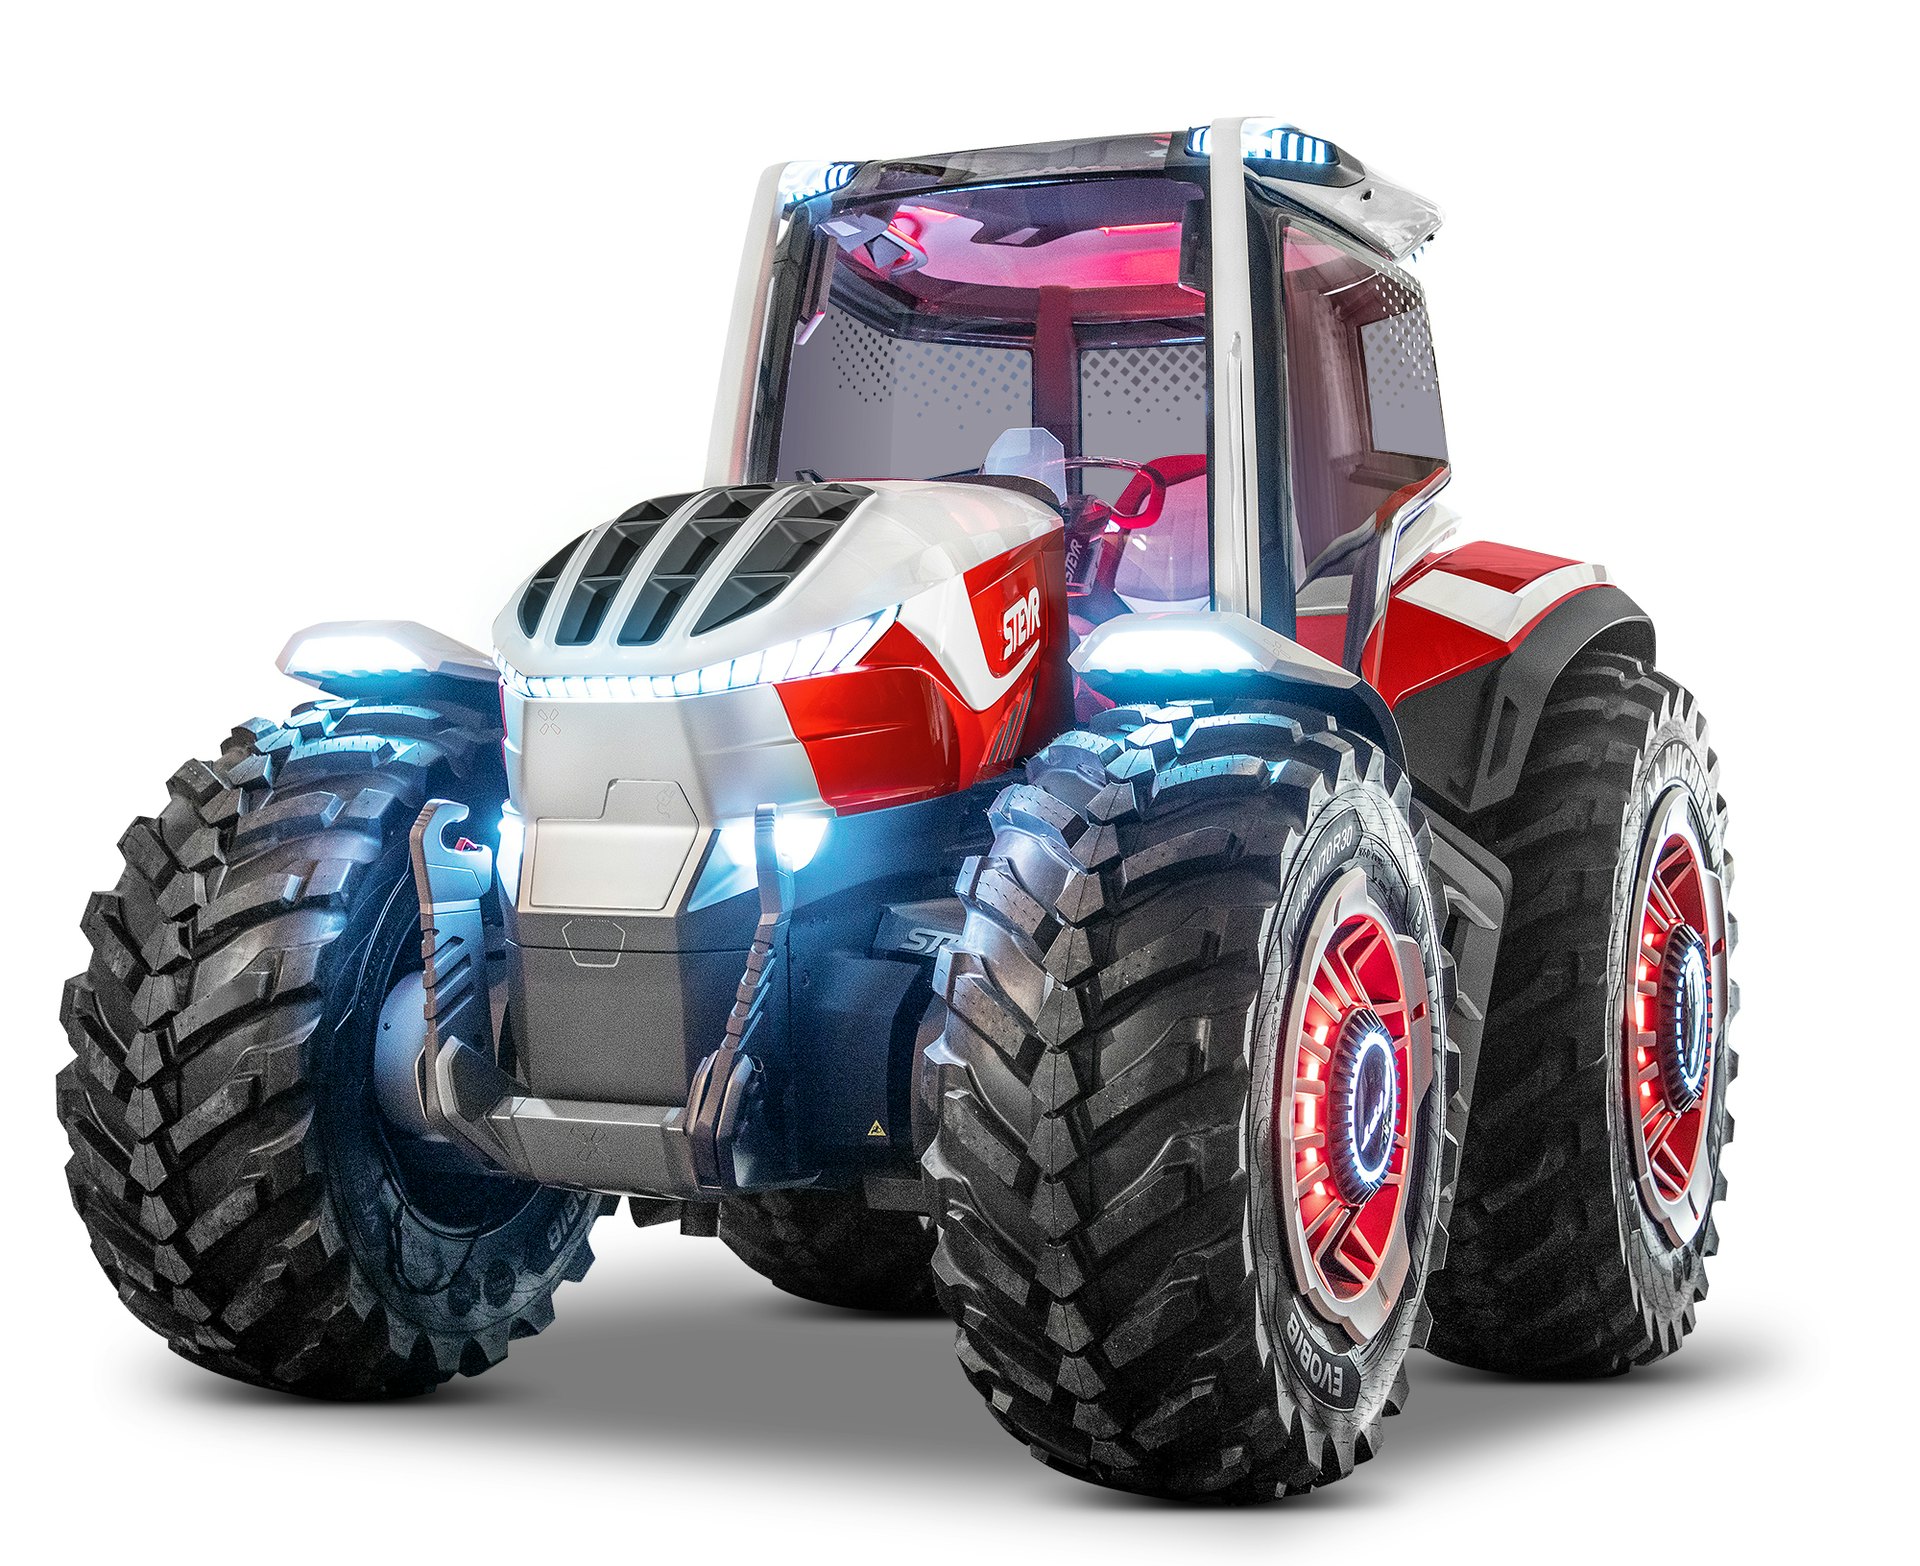 STEYR Unveils Hybrid Concept Tractor